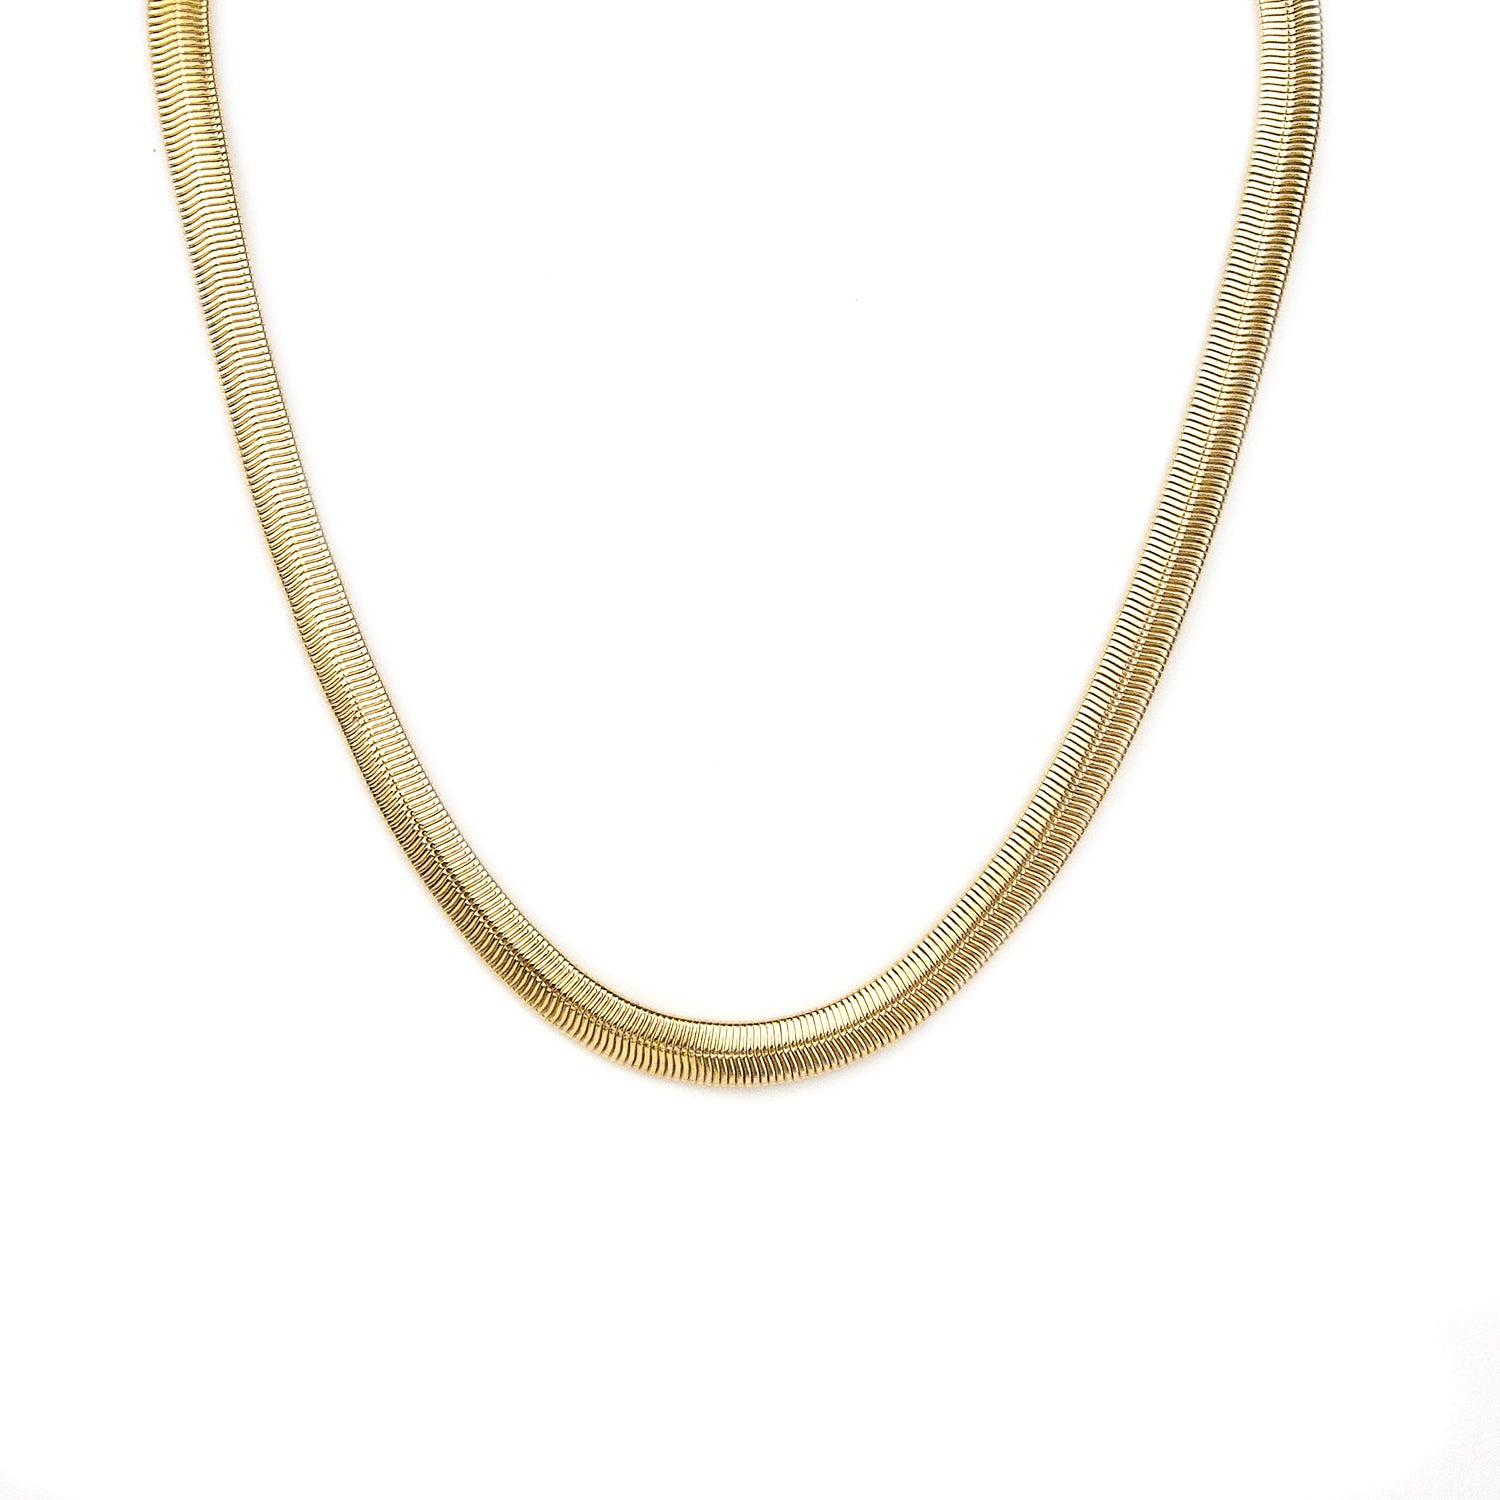 5/16" cobra chain necklace